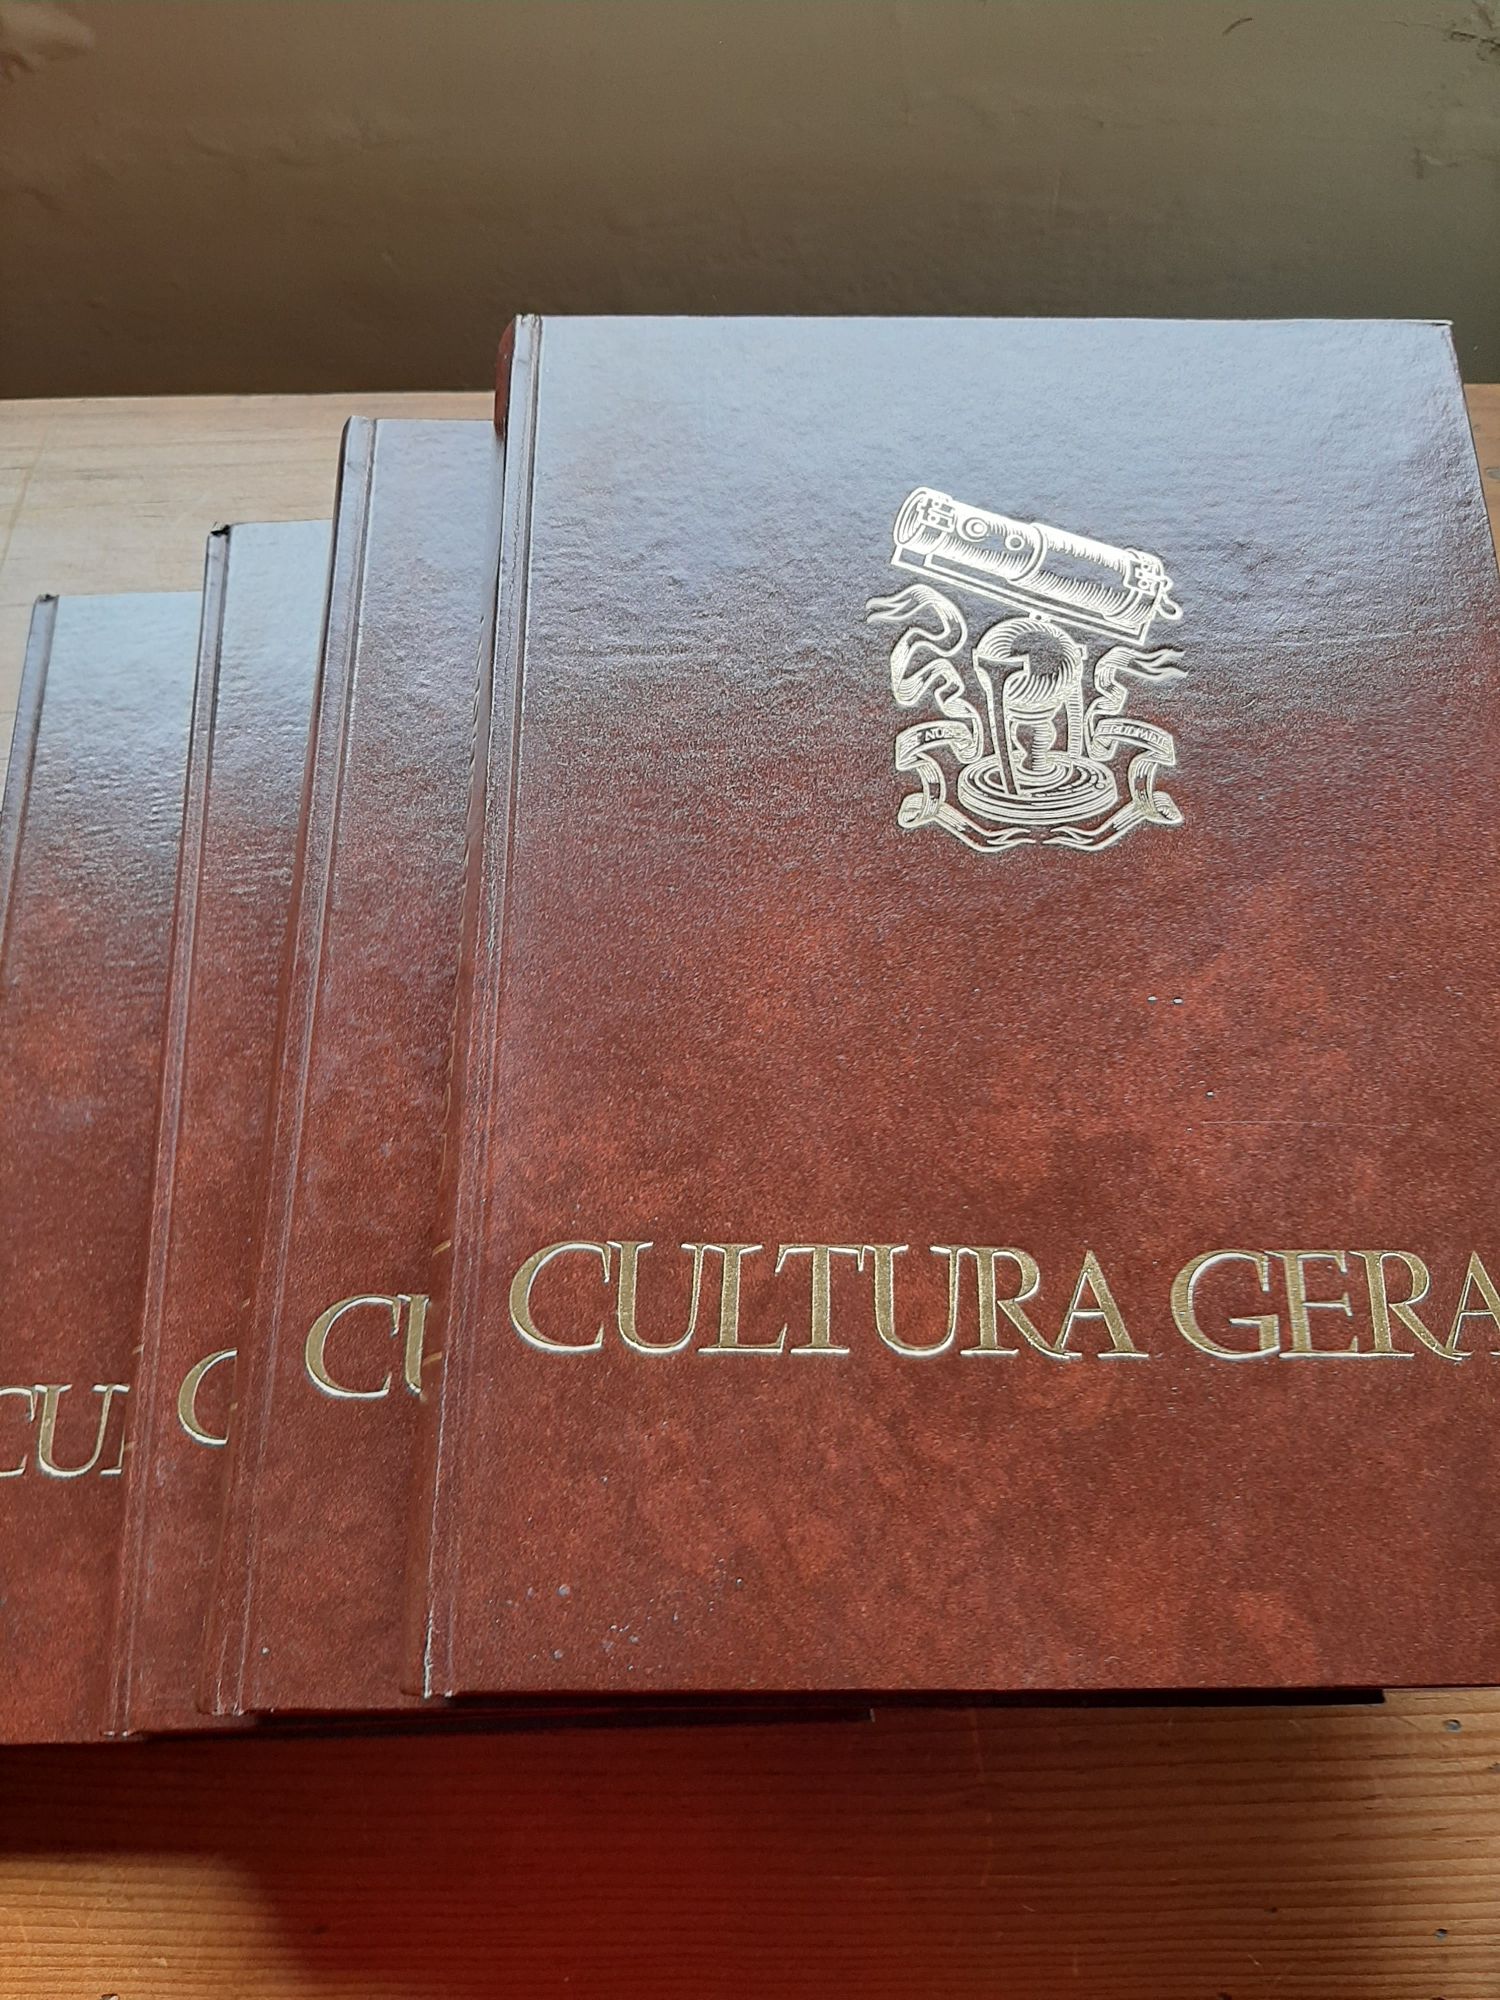 4 Livros cultura geral/2 livros Moderno dicionário lingua portuguesa